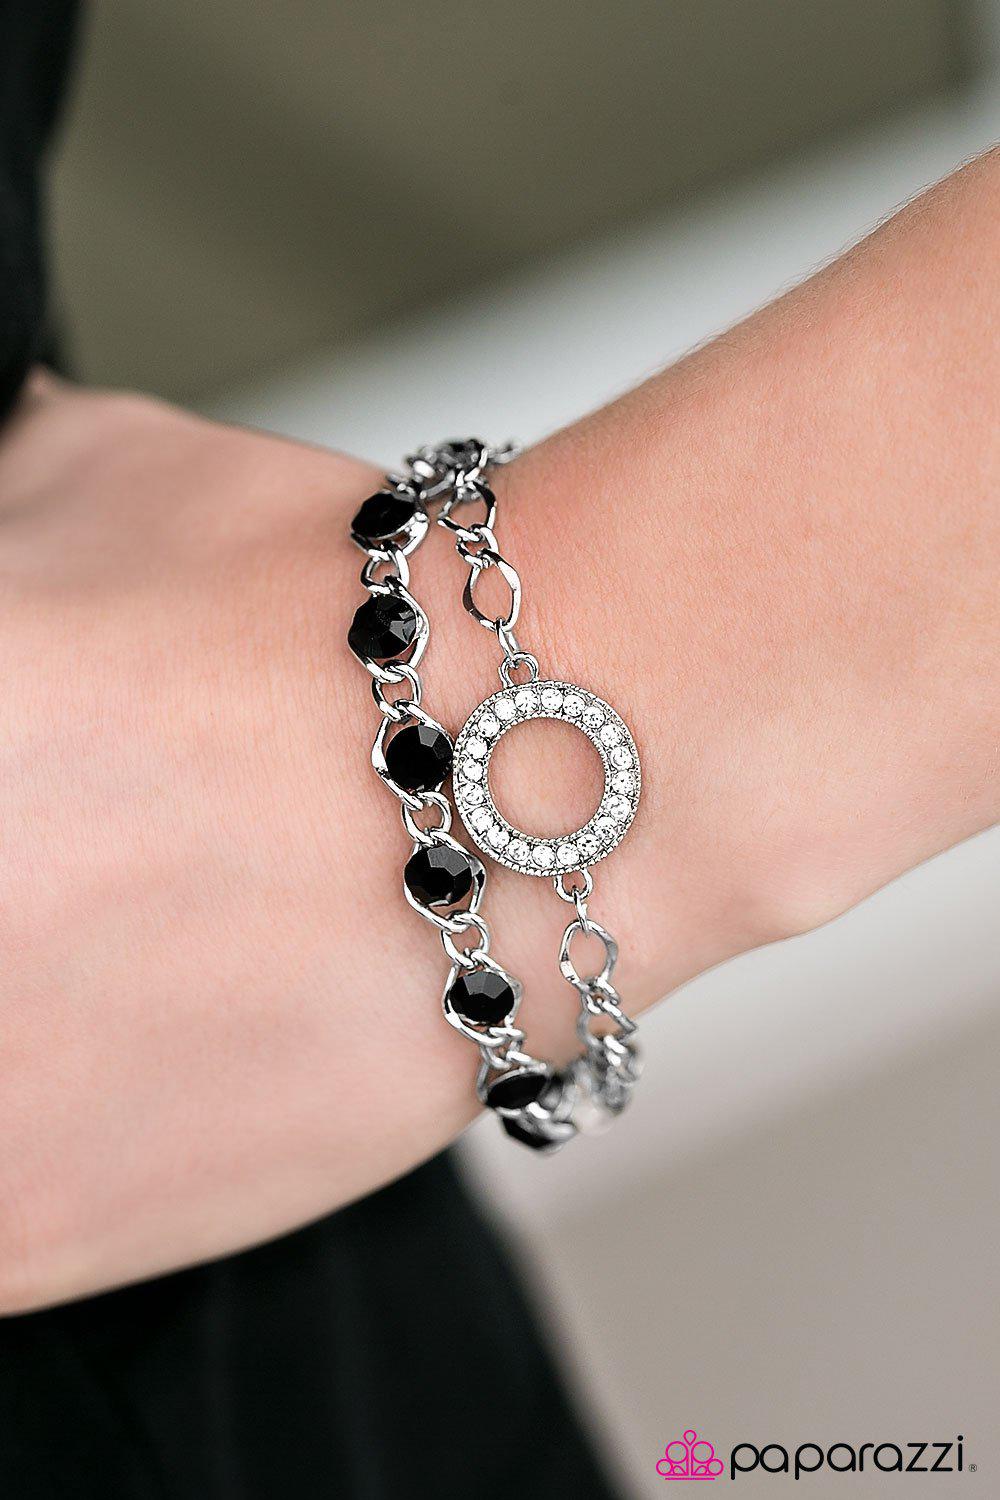 Everyday Shine Black Rhinestone Bracelet - Paparazzi Accessories-CarasShop.com - $5 Jewelry by Cara Jewels